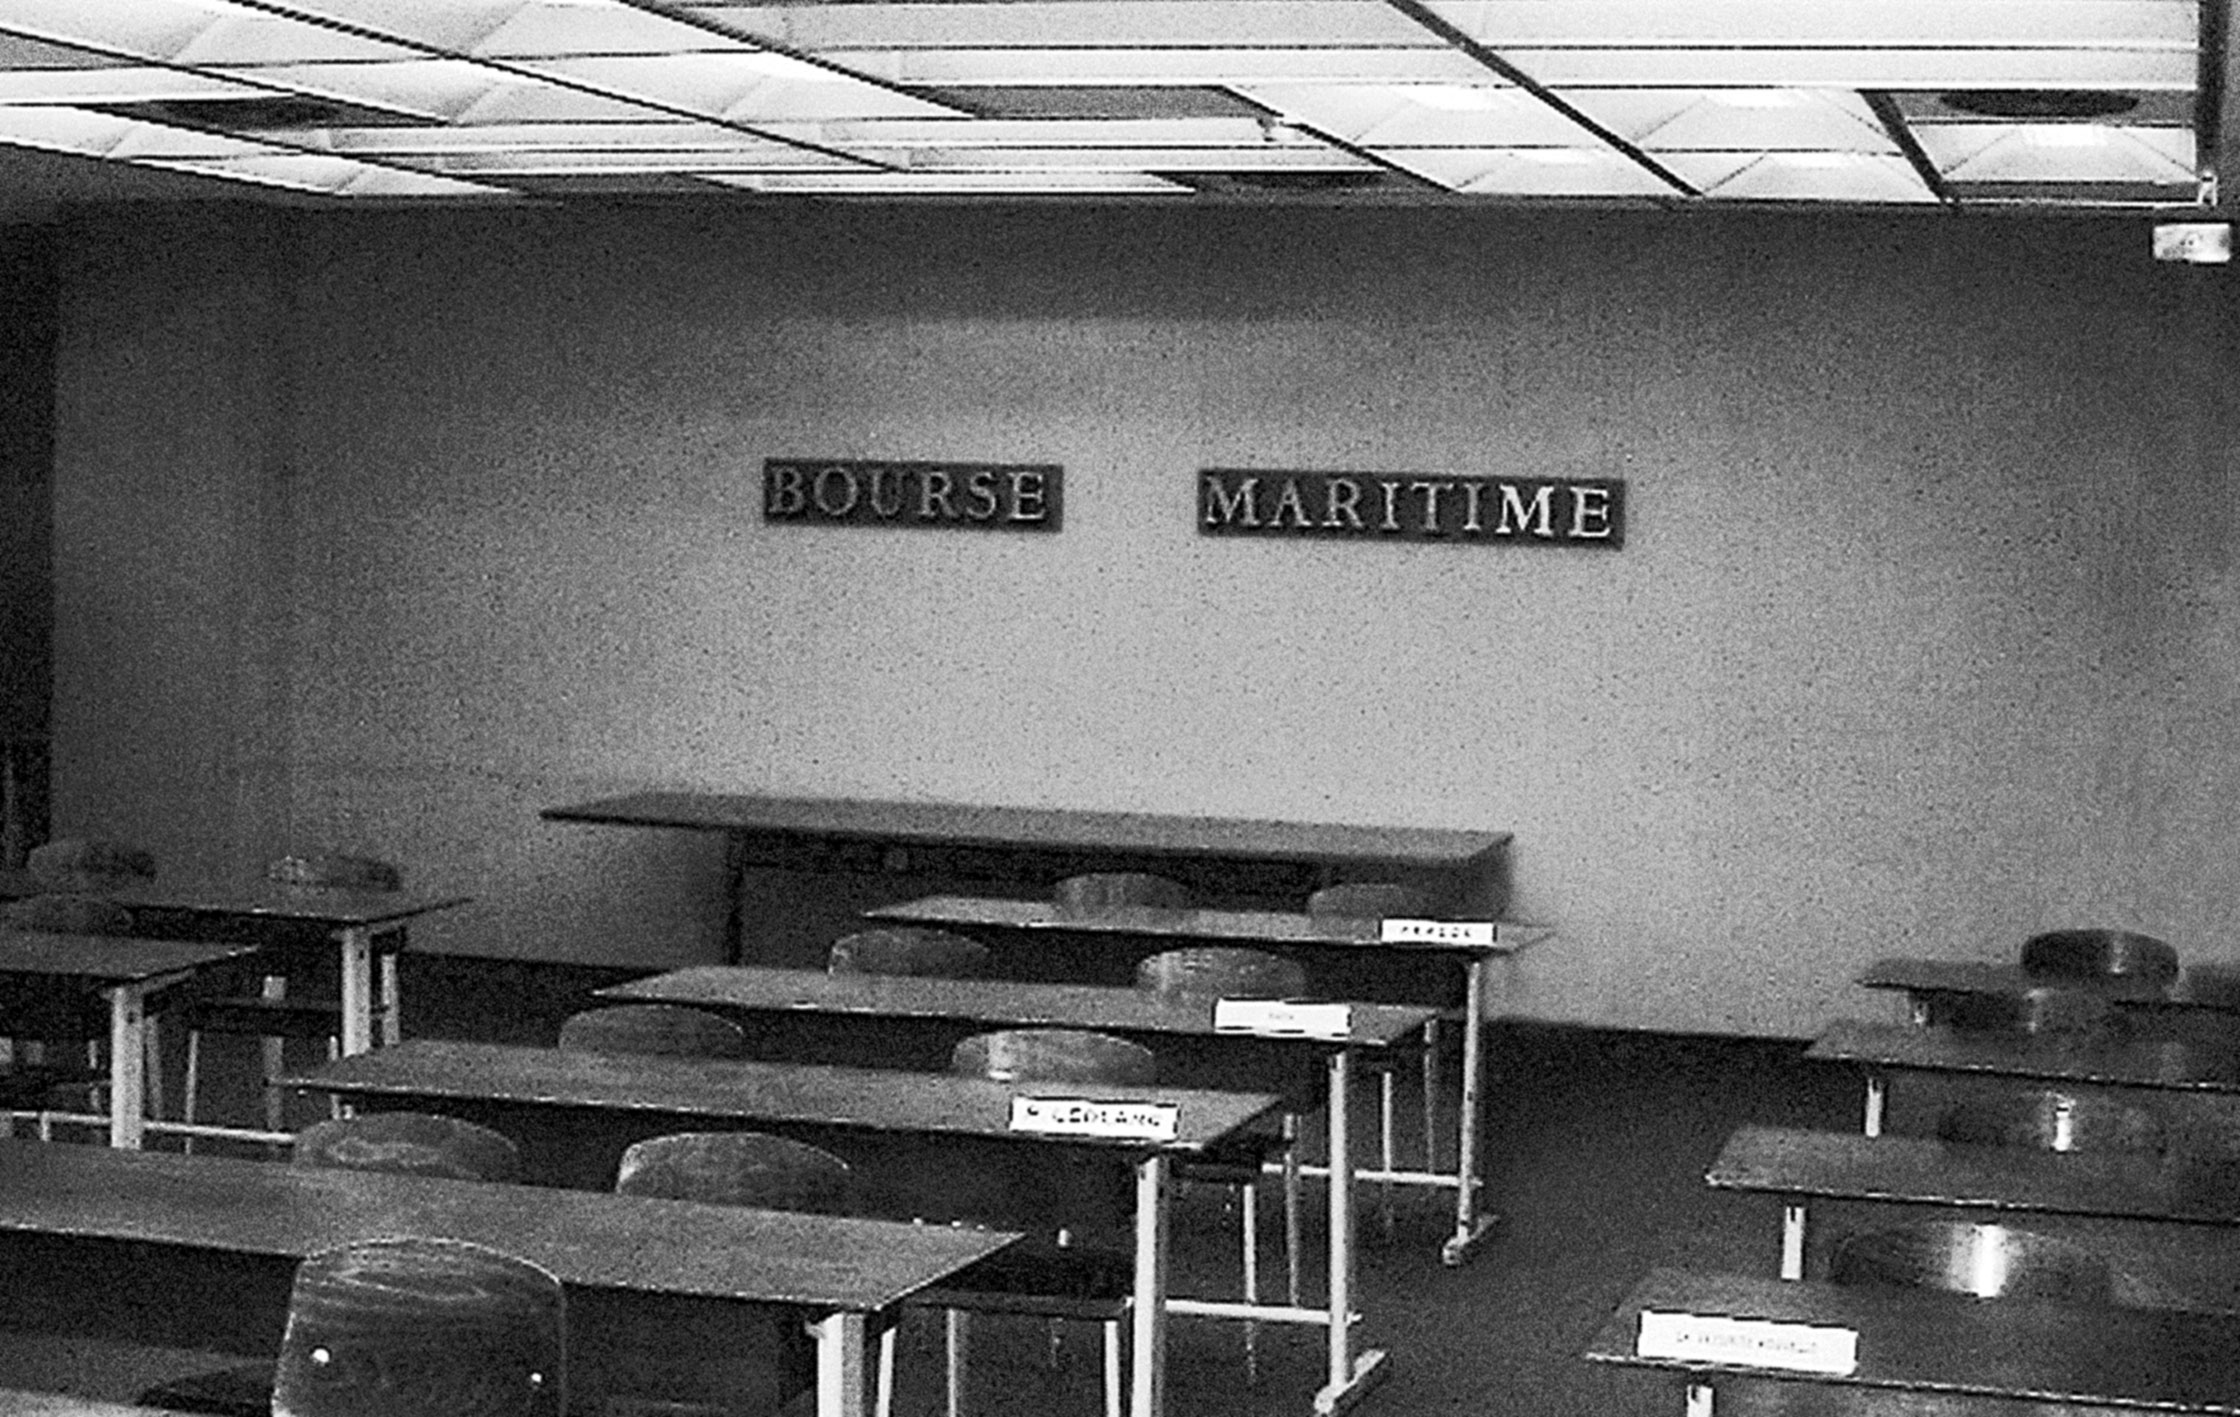 Siège de la Bourse maritime, Paris. Salle équipée de tables Cité n° 500 démontables et de chaises Métropole n° 305, c. 1953.